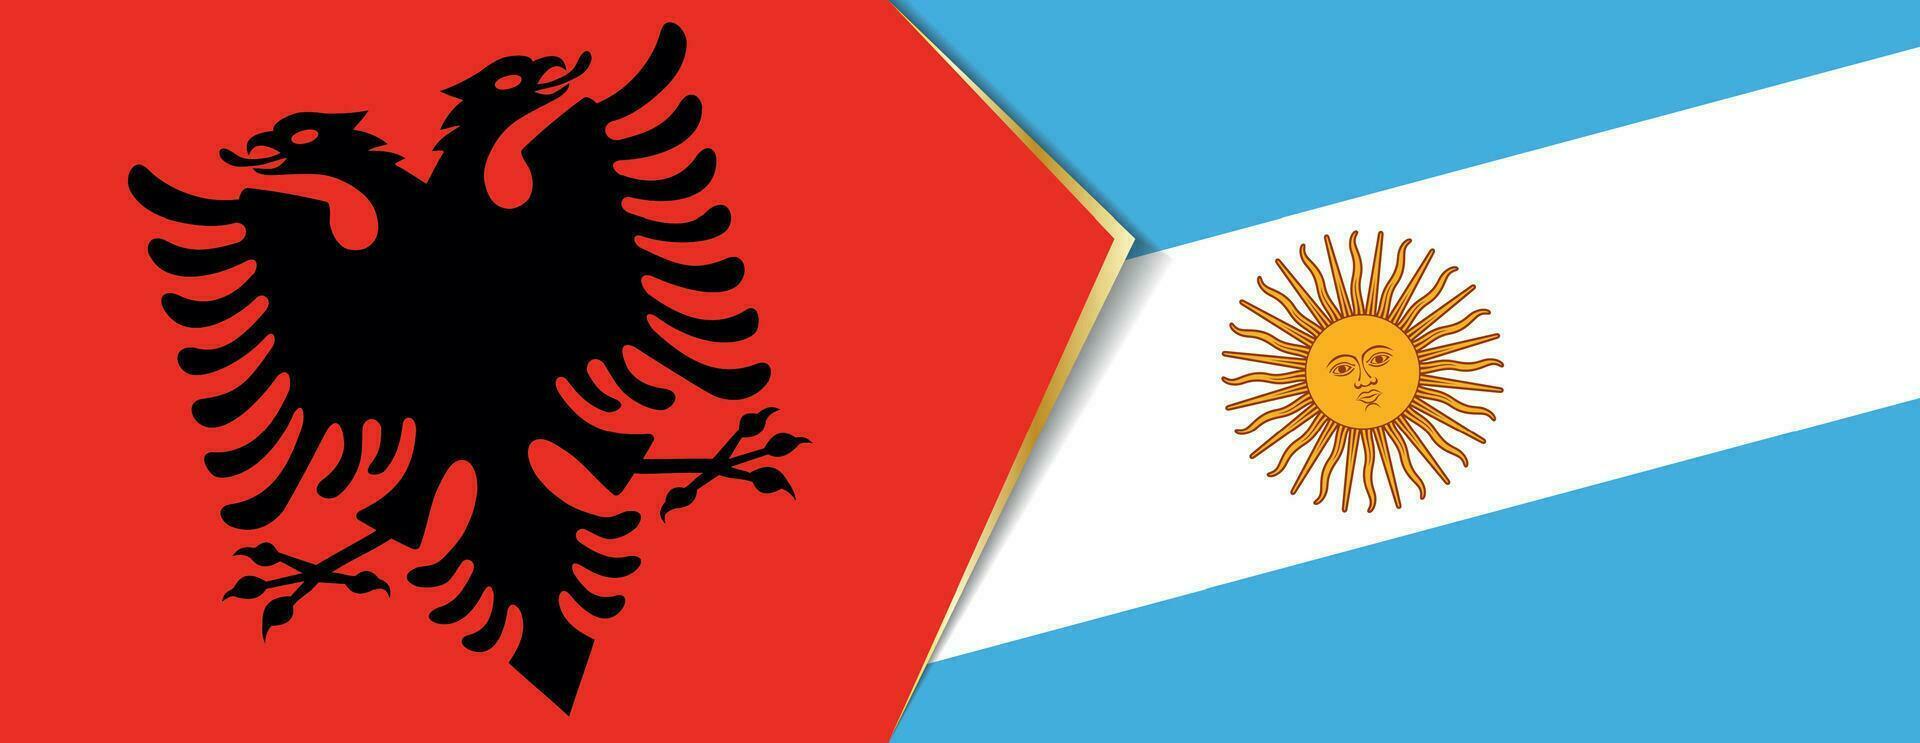 Albania y argentina banderas, dos vector banderas